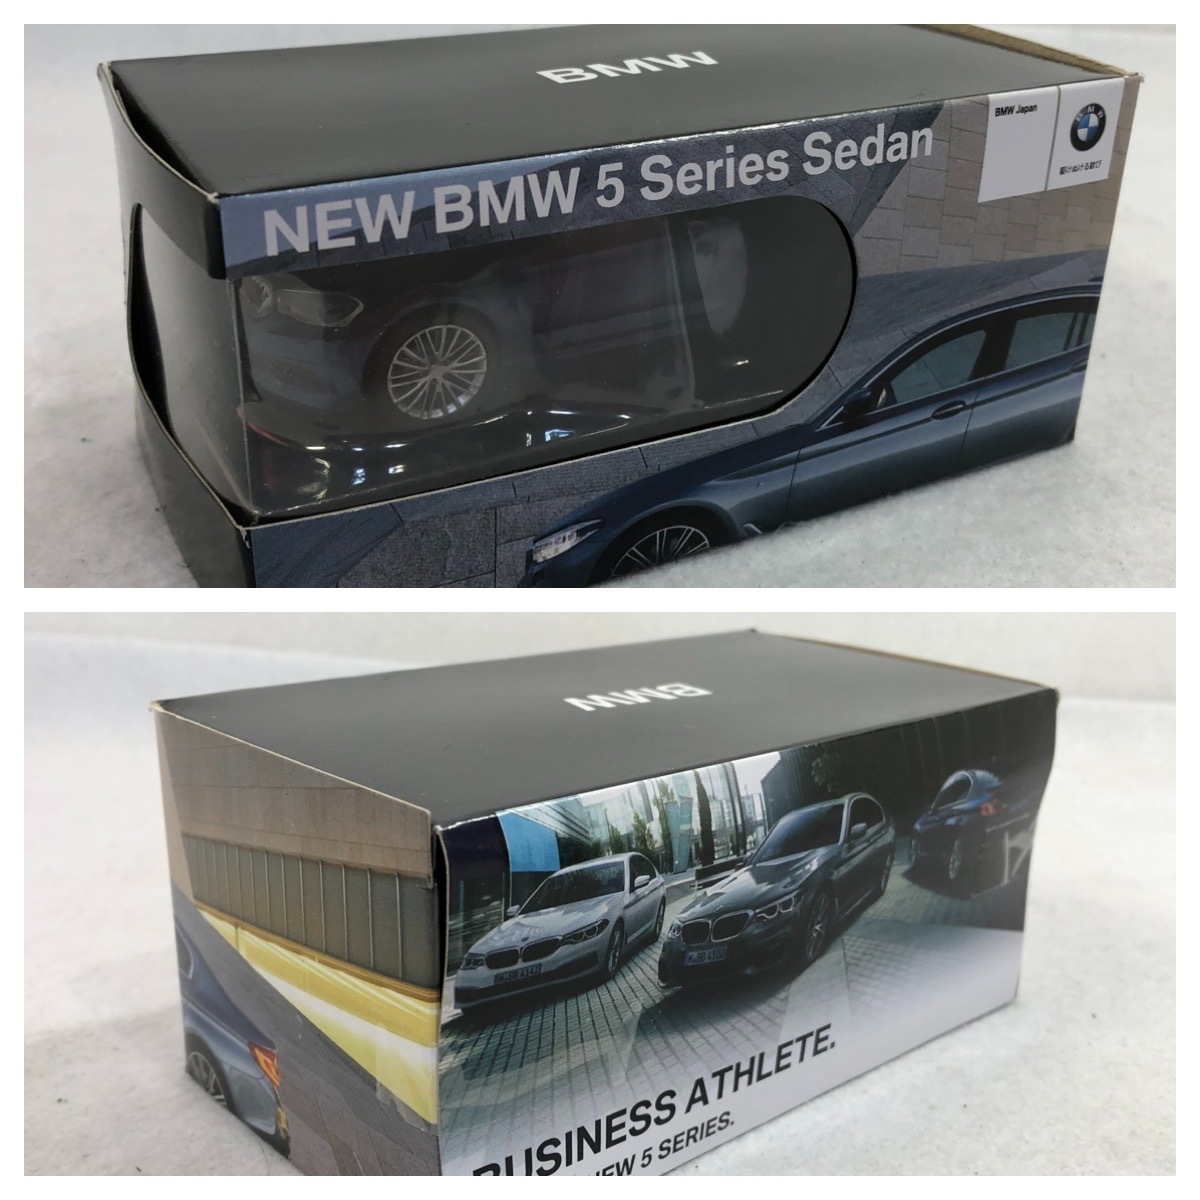 [ новый товар ]BMW новая модель 5 серии седан синий NEW BMW 5 Series Sedan дилер не продается миникар type беспроводная мышь 